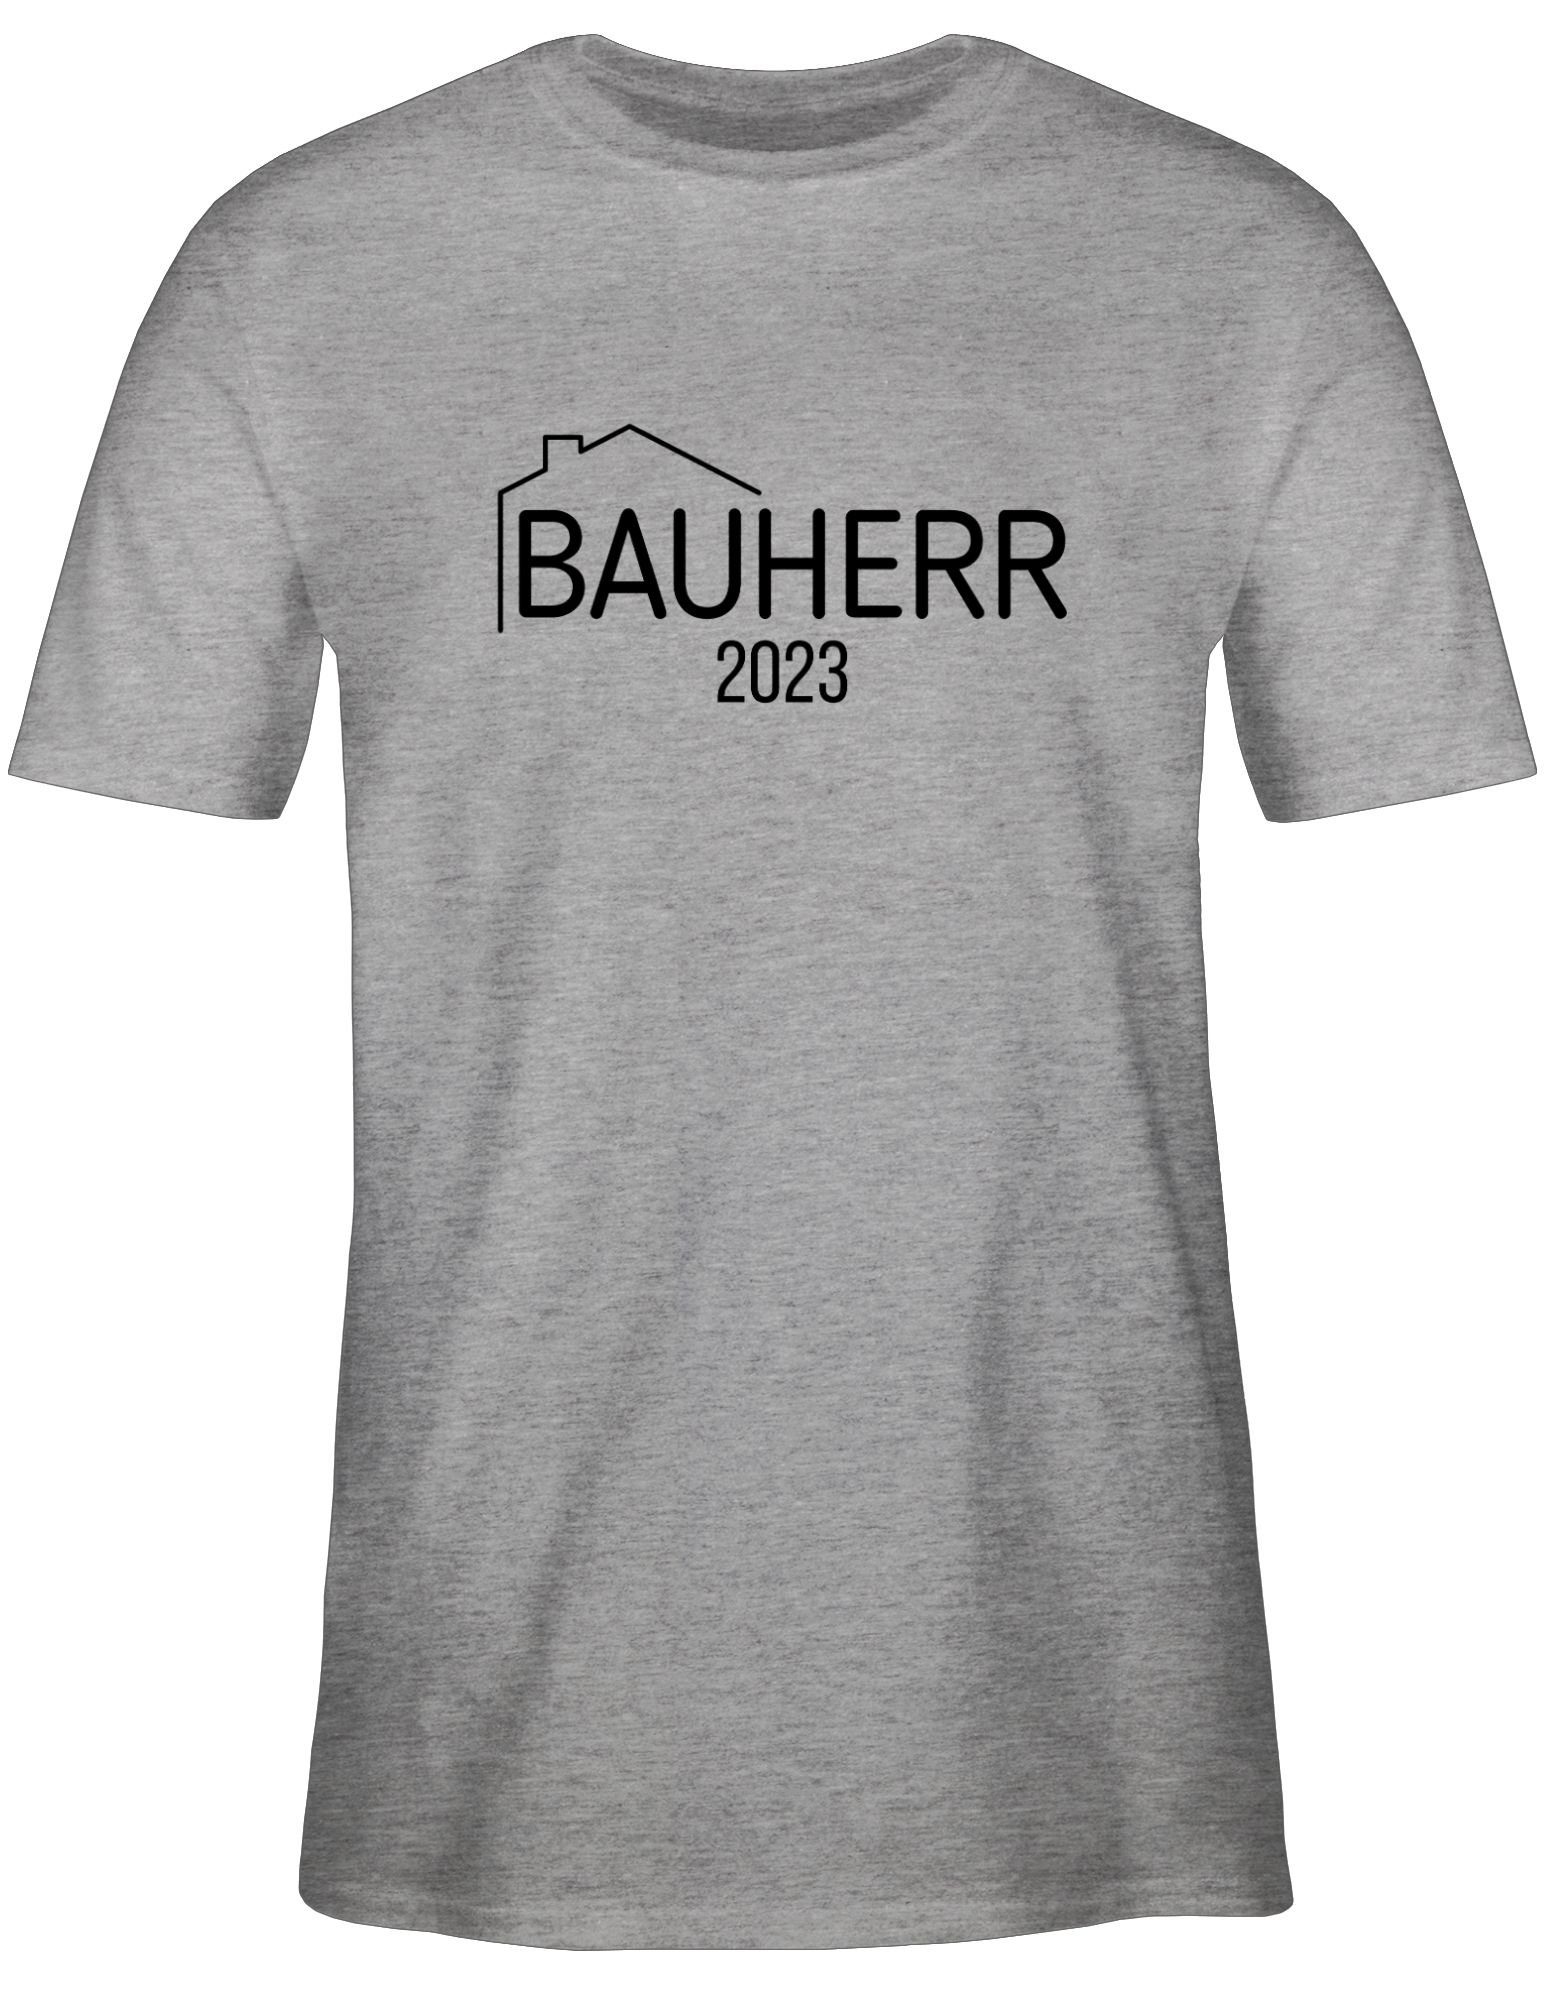 Shirtracer T-Shirt Bauherr 2023 Herren Geschenke meliert & Grau Männer 3